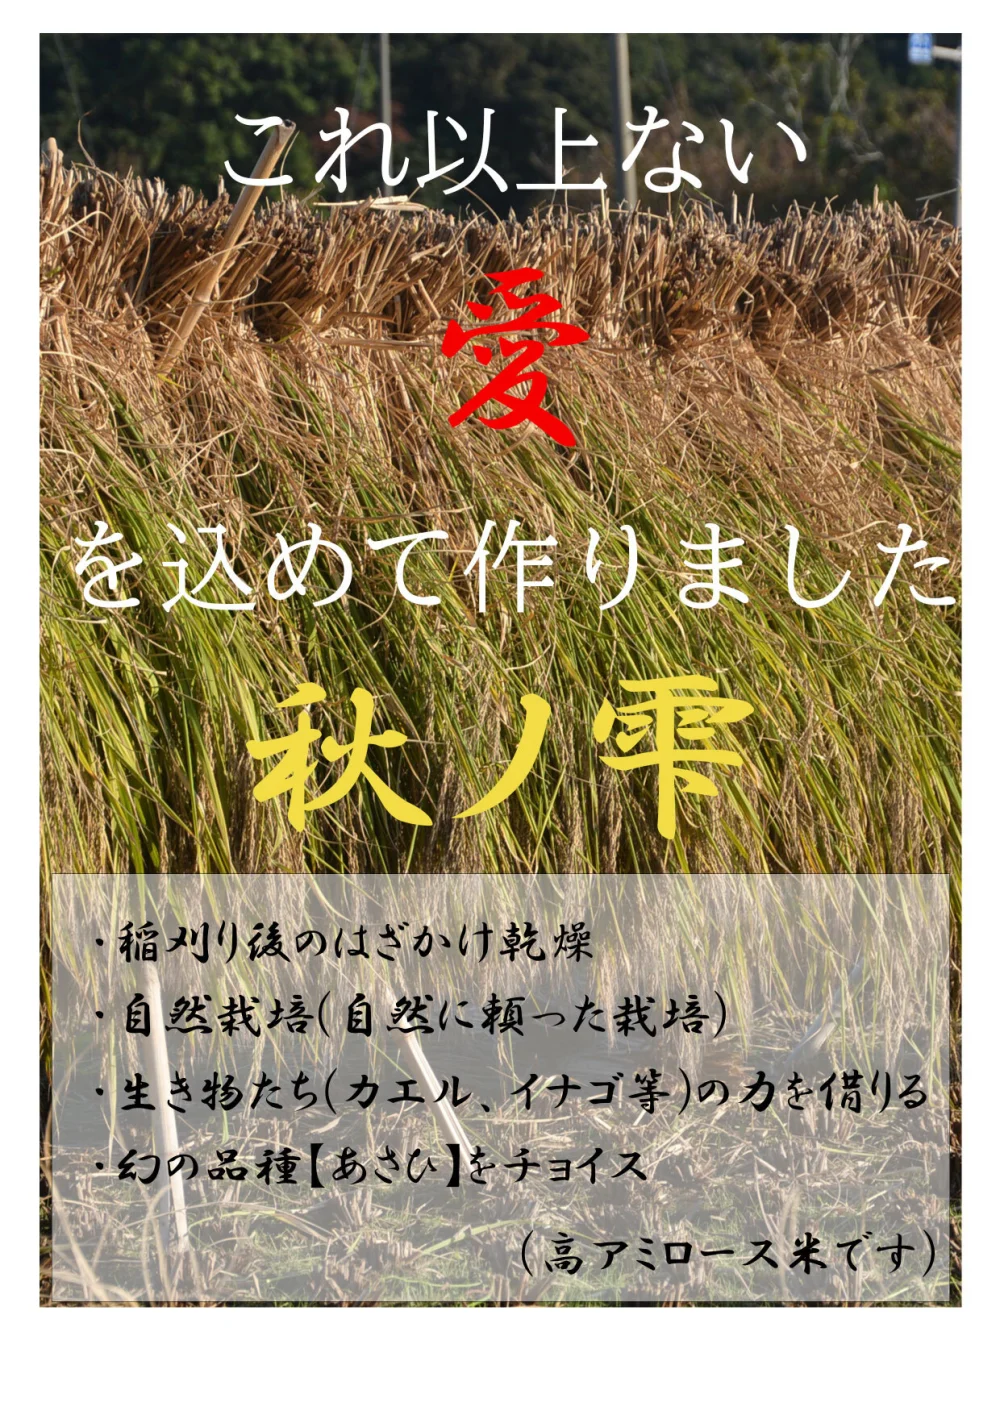 農薬化学肥料除草剤不使用 R5年度米愛媛県産ヒノヒカリ稲架掛け米 20kg